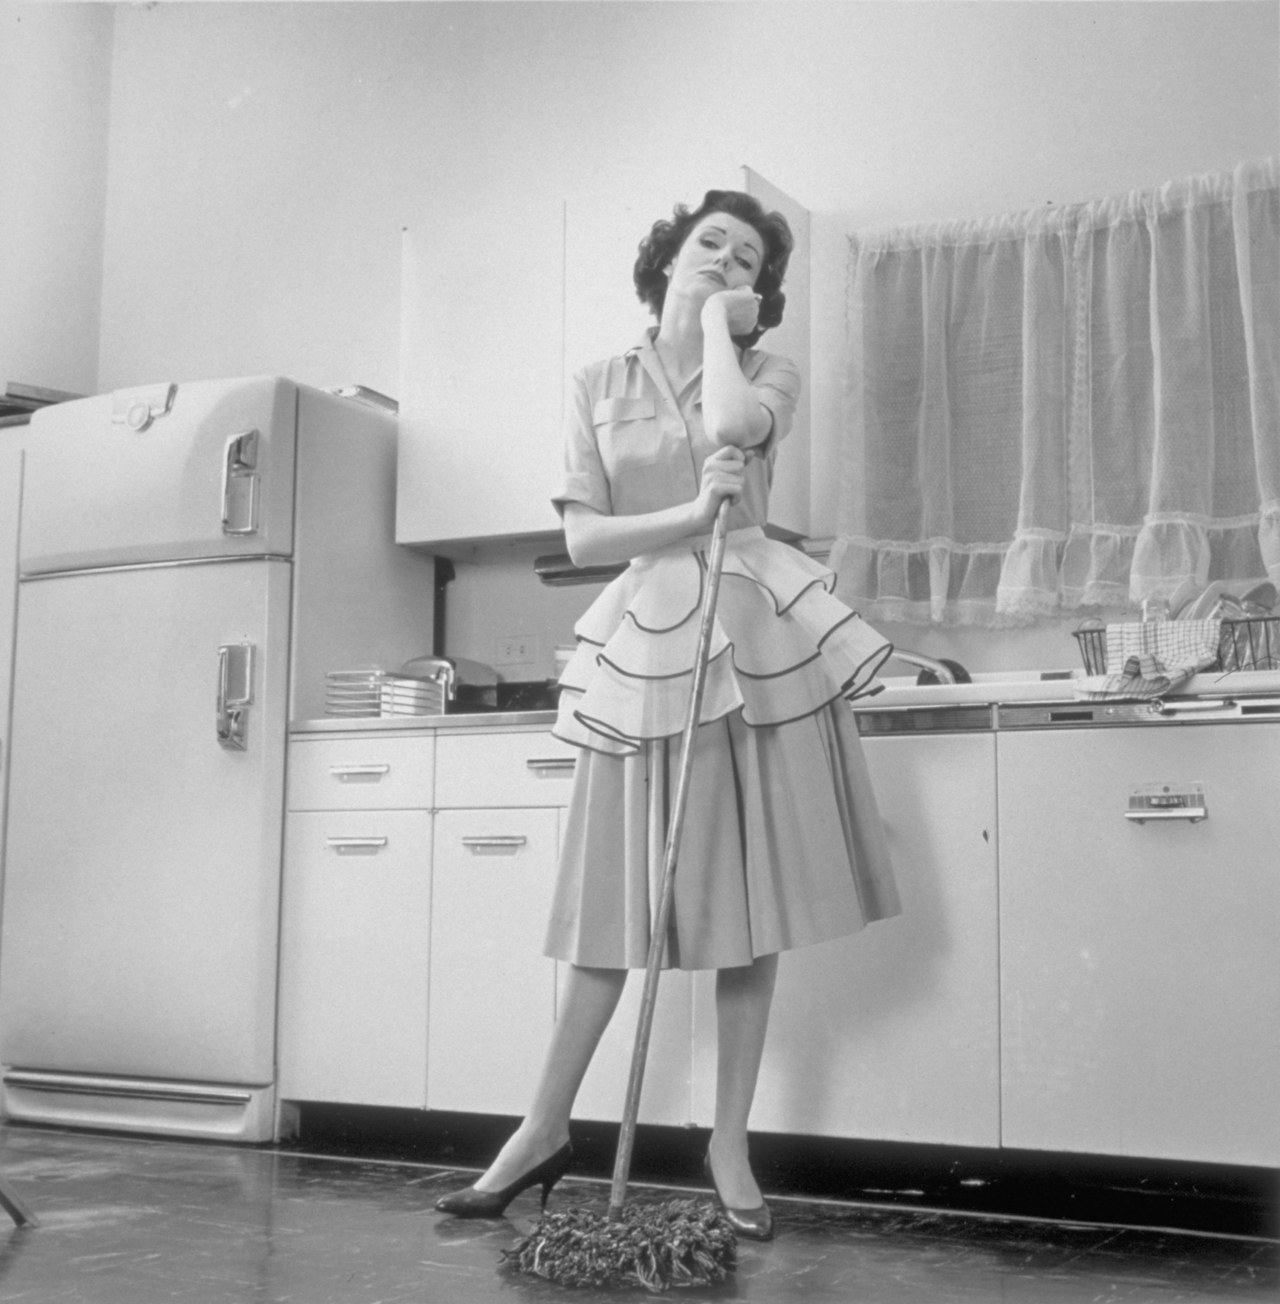 حسنا dressed woman in the kitchen leaning on a mop, New York, New York, December 2, 1962. (Photo by Camerique/Getty Images)